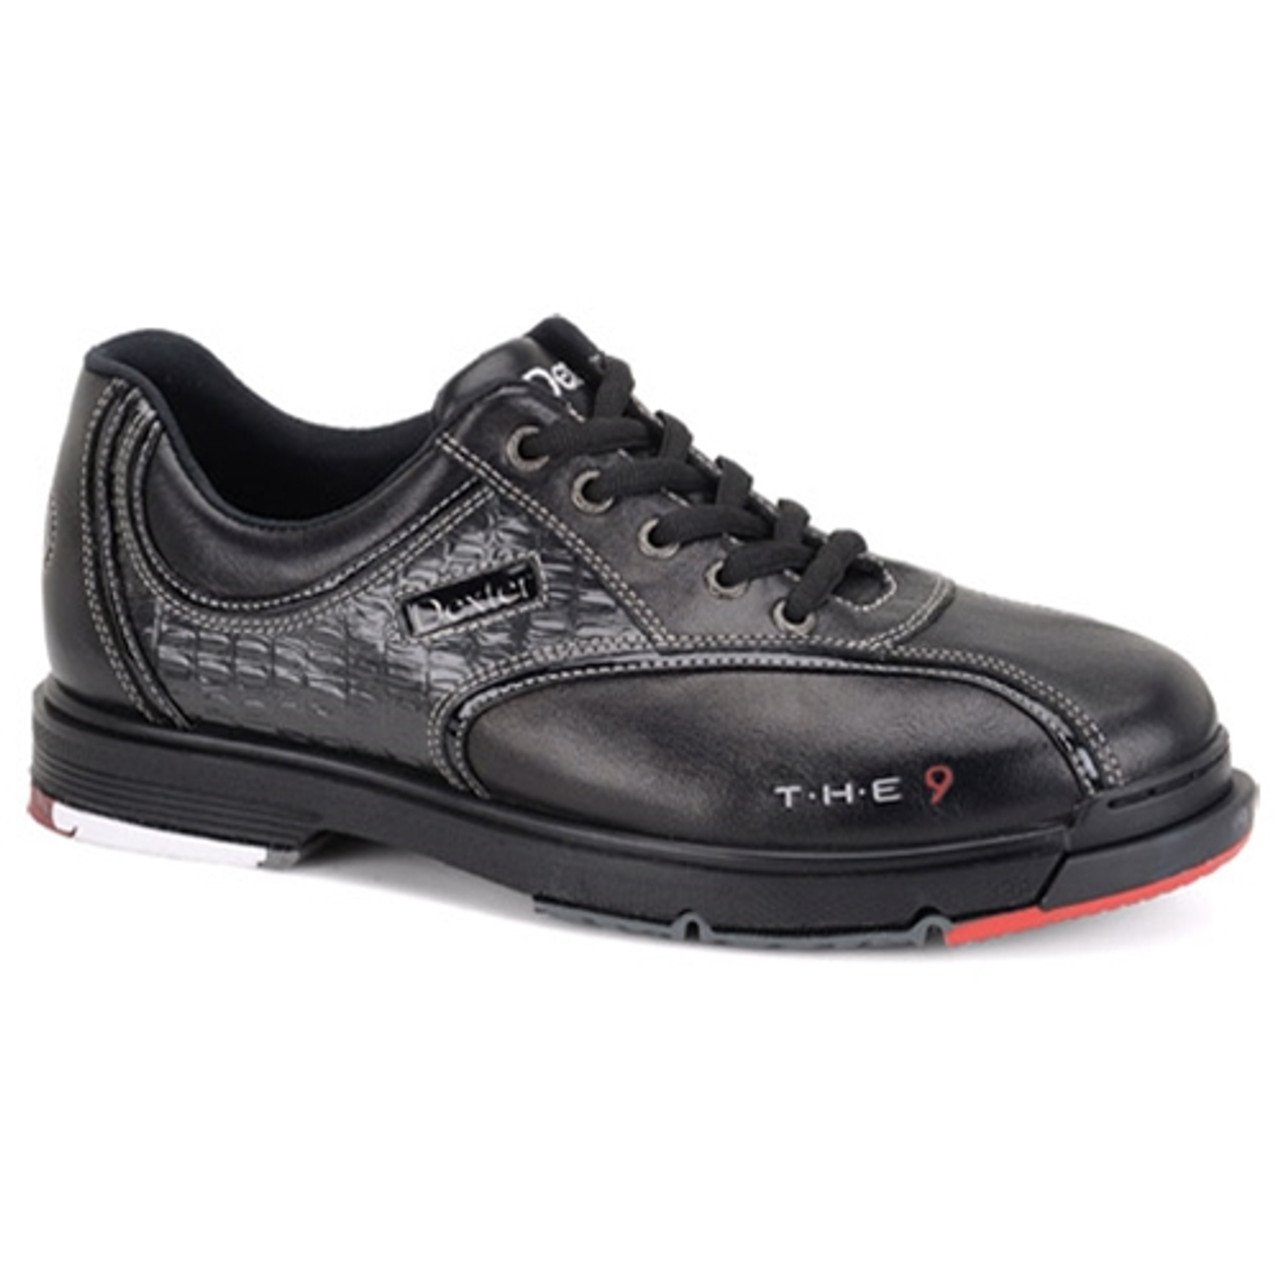 dexter black bowling shoes